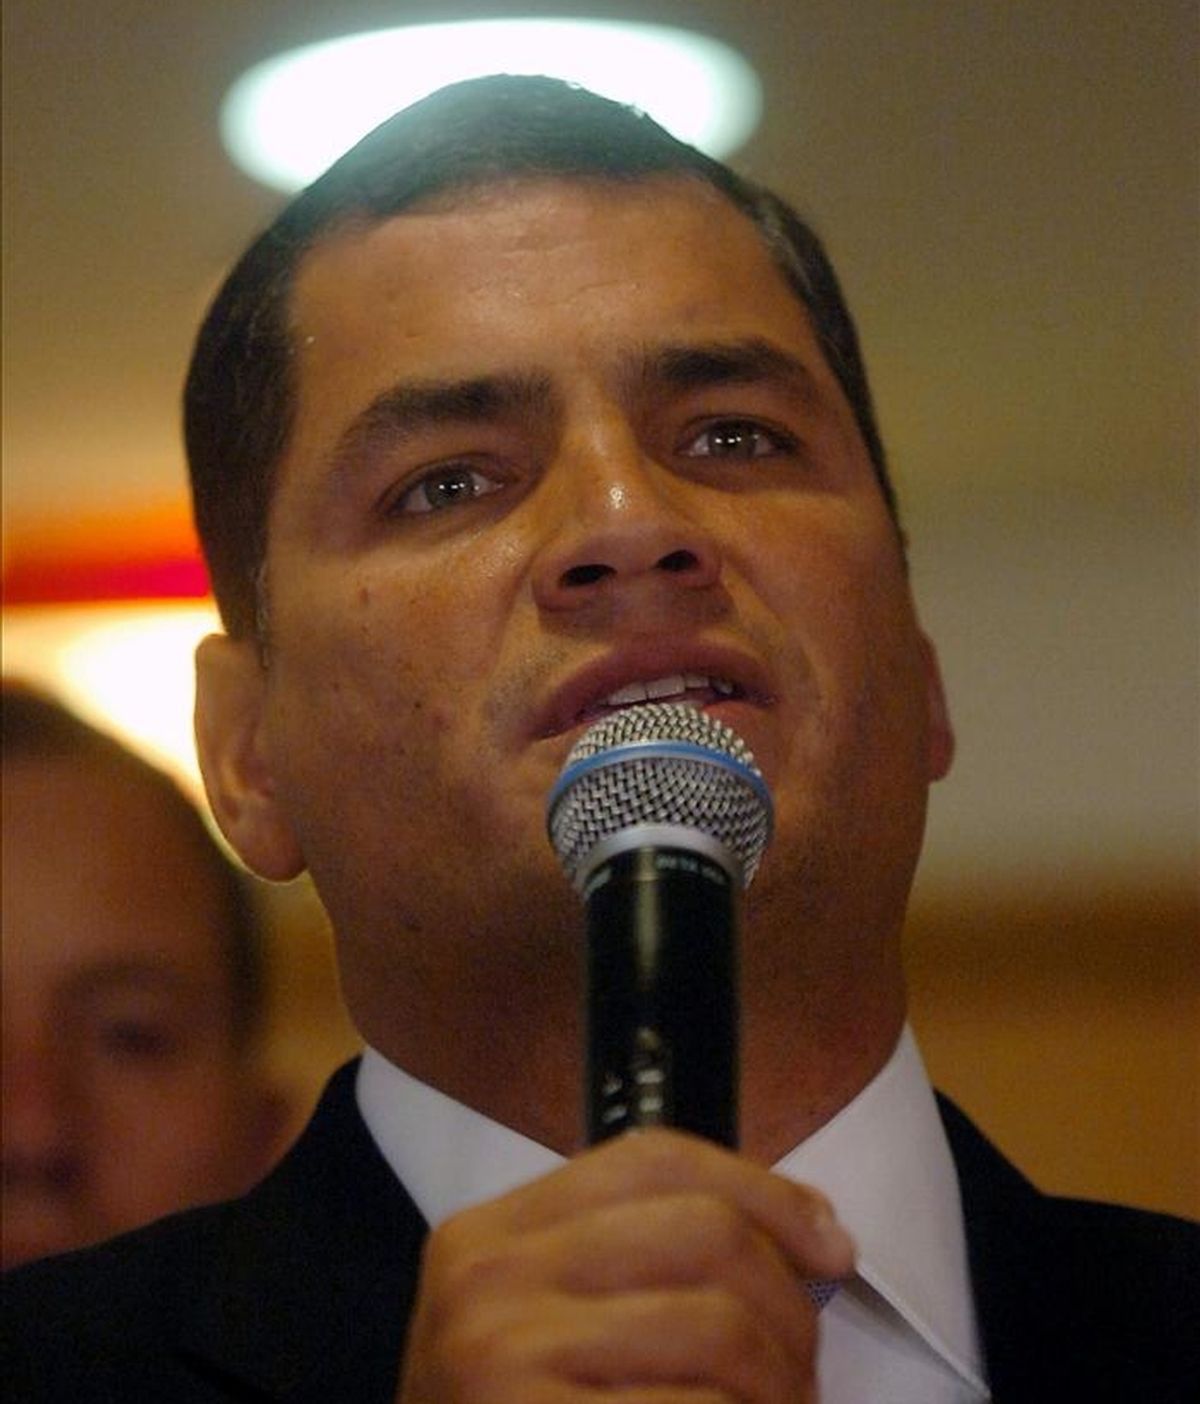 En 2006, cuando el hoy presidente ecuatoriano, Rafael Correa, anunció su candidatura, "sus credenciales de izquierda no convencieron del todo a las FARC" pero cuando su popularidad se incrementó "el grupo aportó aproximadamente 400.000 dólares a su campaña". EFE/Archivo